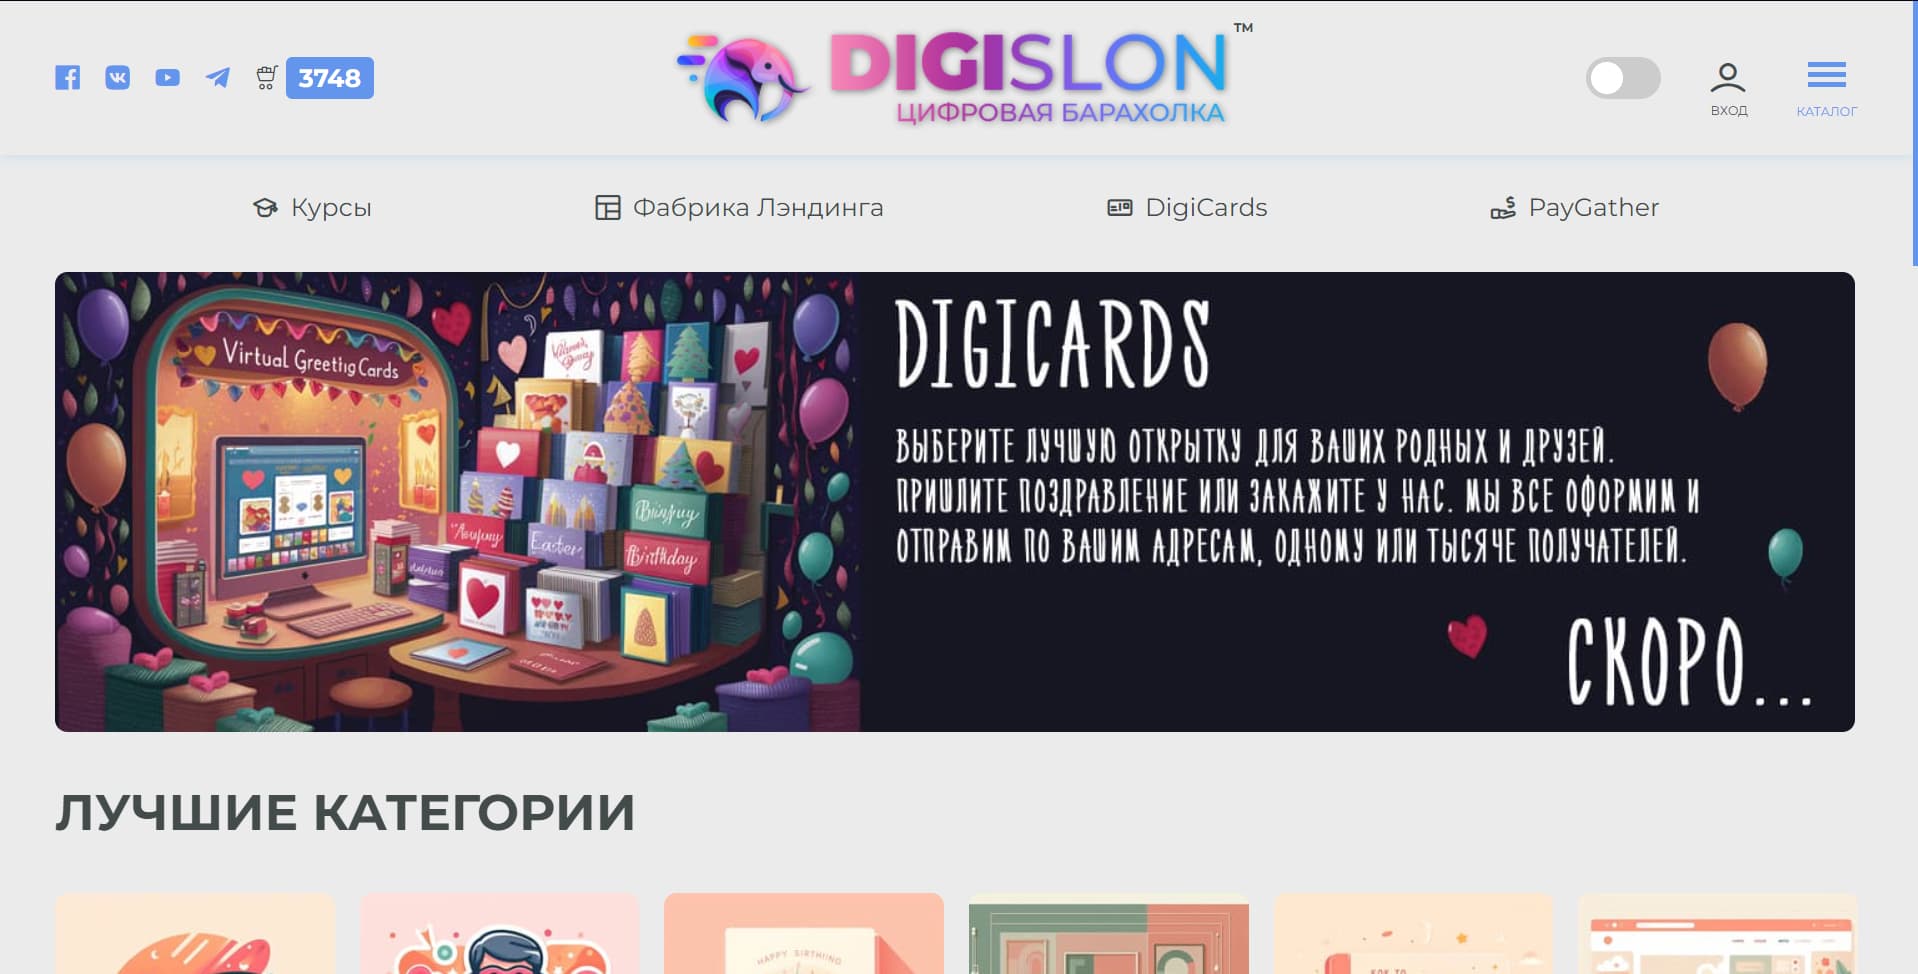 Digislon.ru - барахолка цифровых товаров